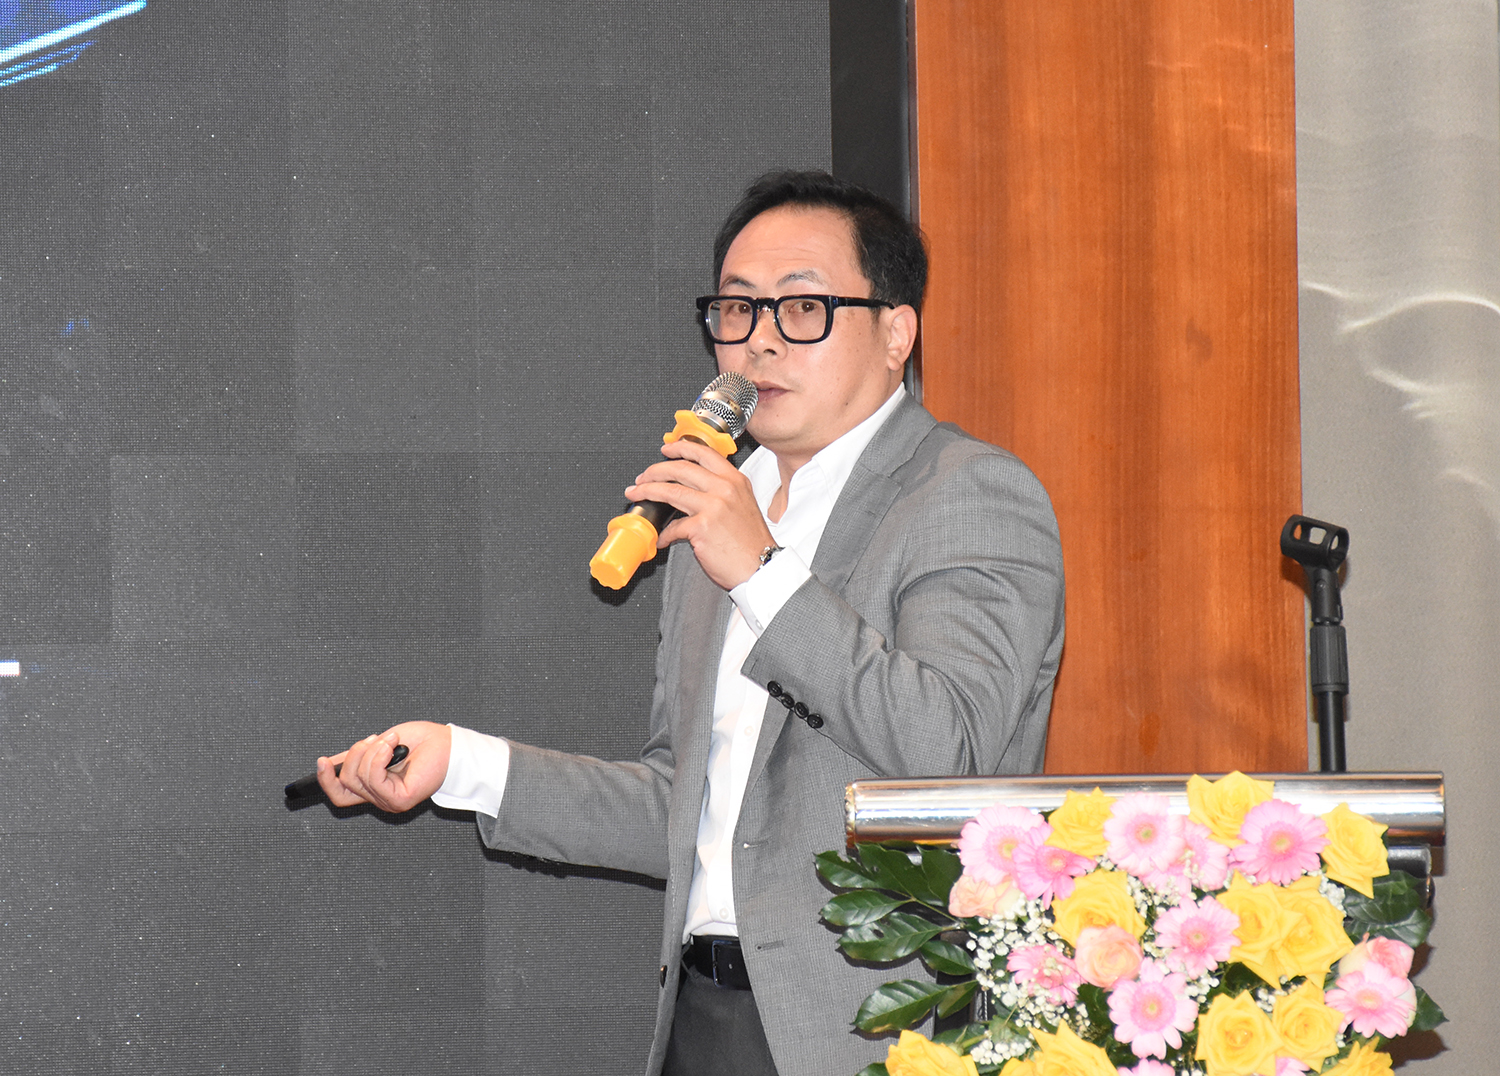 Tại lễ kỷ niệm, các đại biểu đã được nghe diễn giả Ths.KTS Nguyễn Trung Kiên, Tổng Giám đốc Công ty GK chia sẻ 